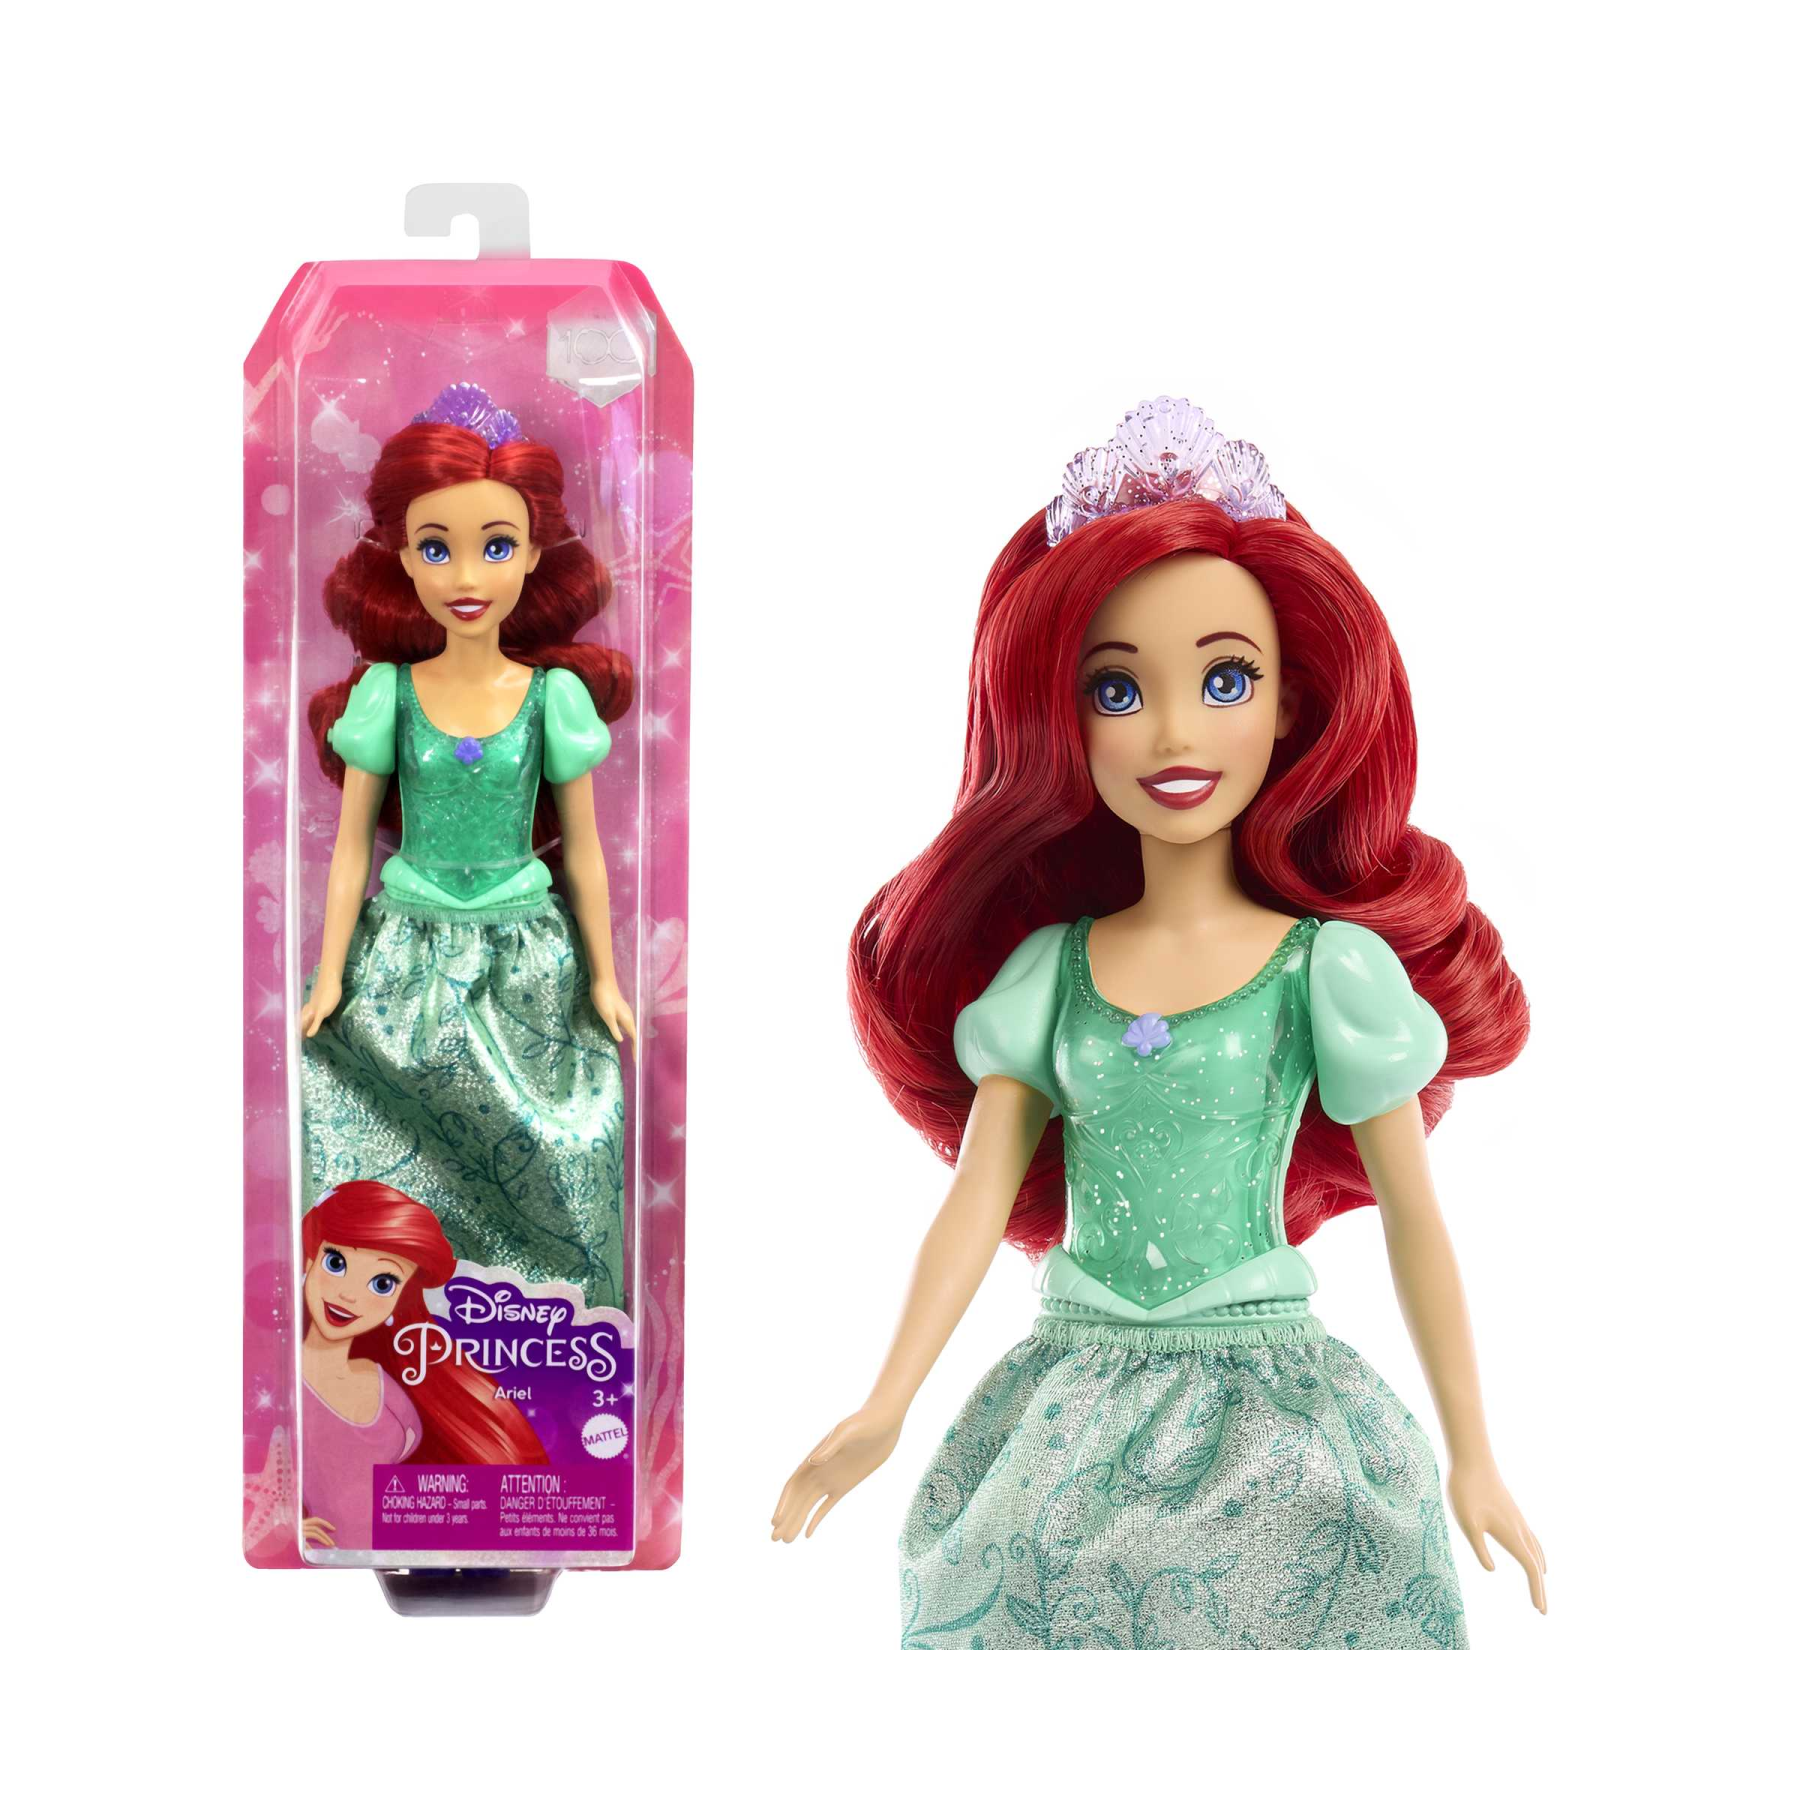 Disney princess - ariel bambola snodata, con capi e accessori scintillanti ispirati al film disney, giocattolo per bambini, 3+ anni, hlw10 - DISNEY PRINCESS